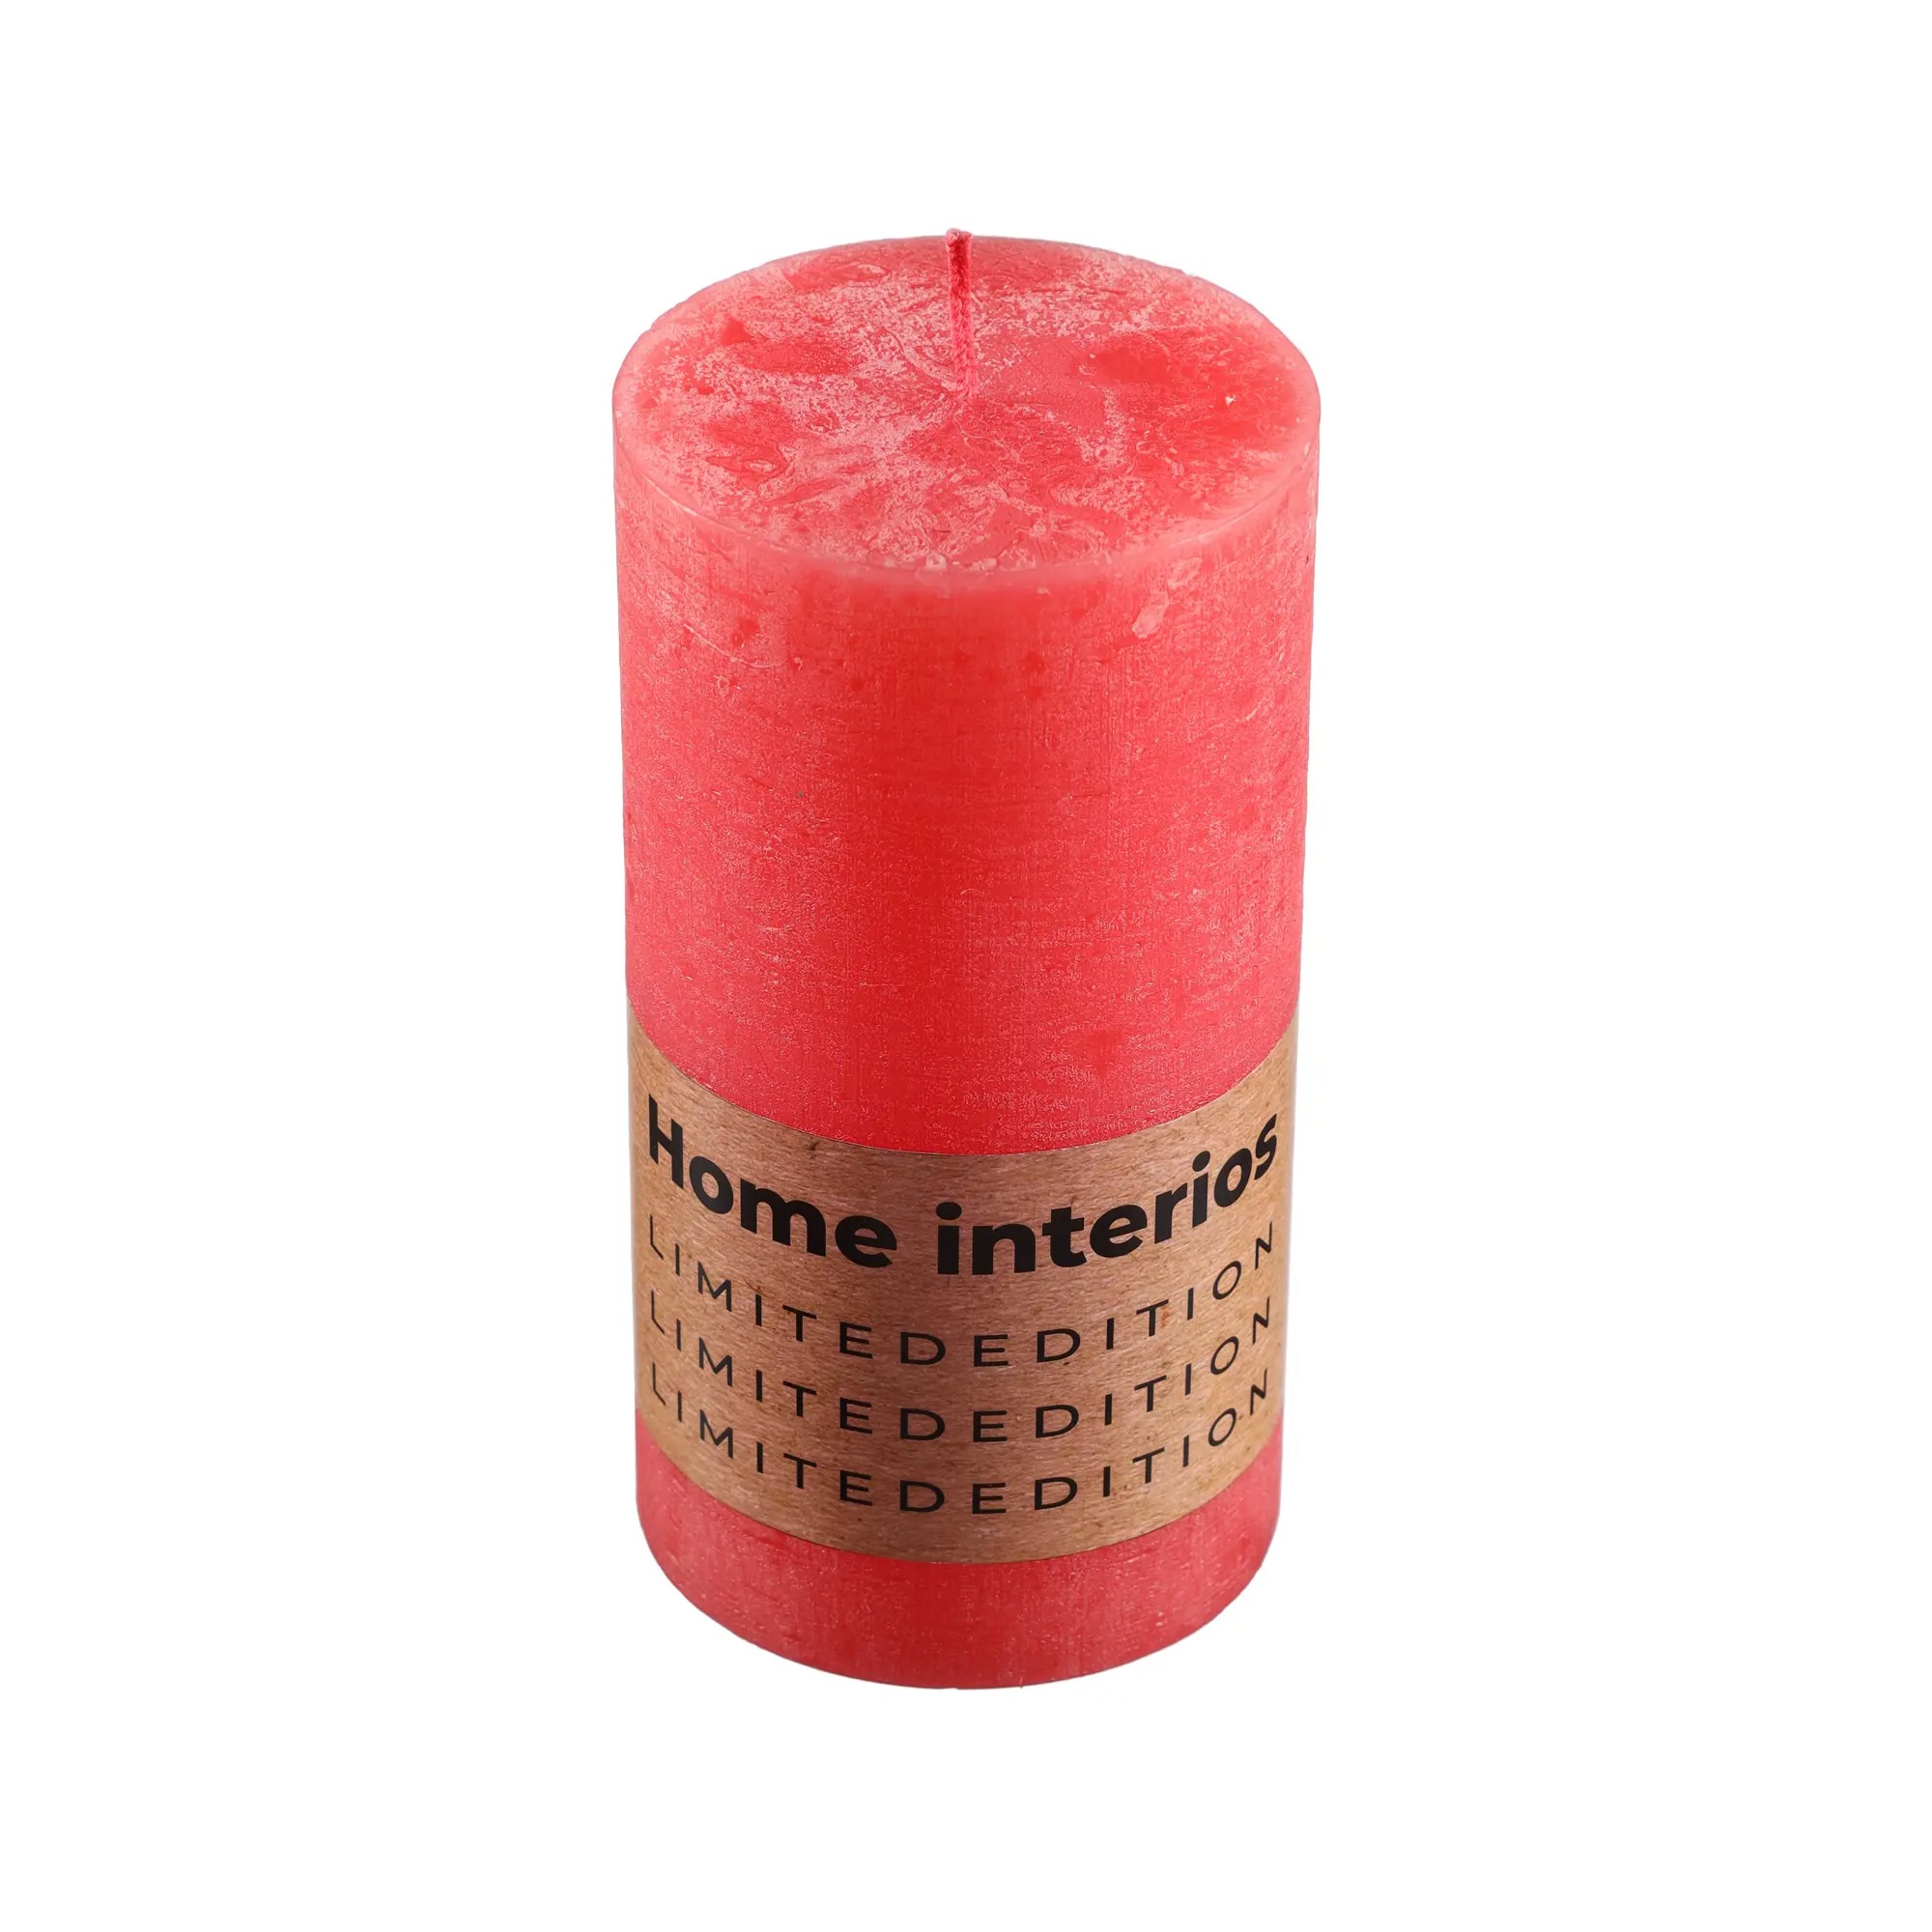 Свеча столбик рустик Home Interiors нежно-красный 7х13 см свеча цилиндр парафиновая красный металлик 4×6 см